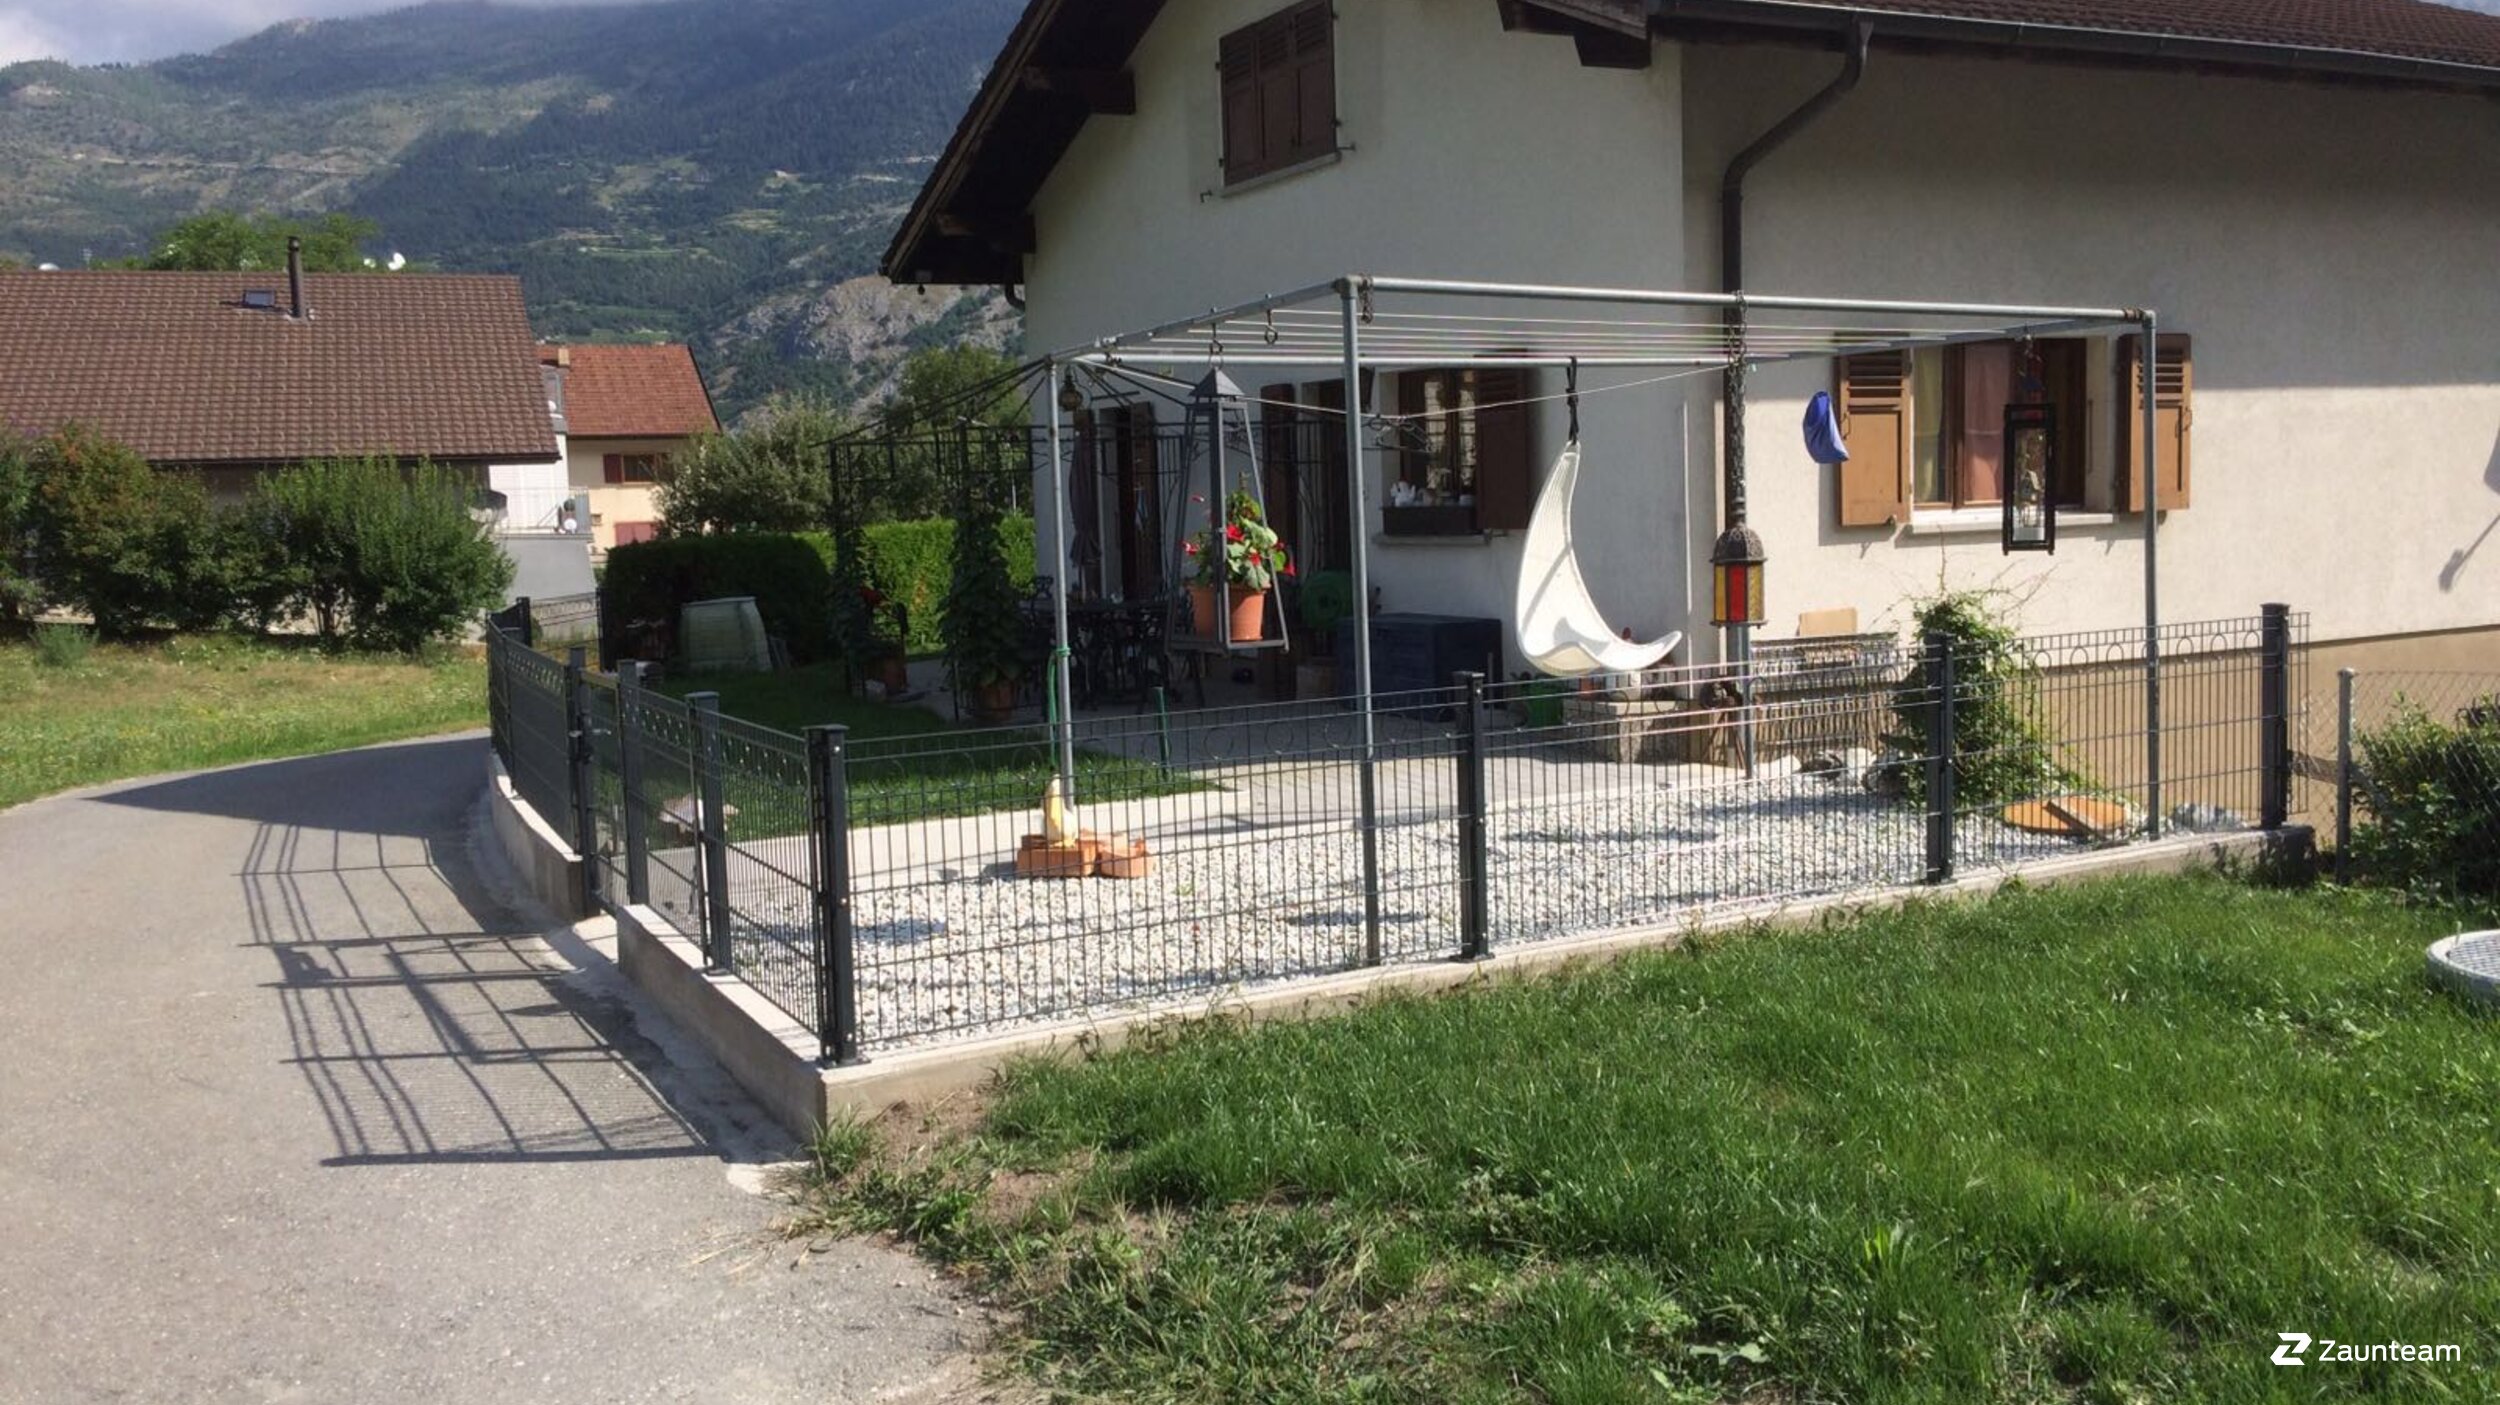 Clôture en grille double fil décorative de 2016 à 3952 Susten Suisse de Zaunteam Wallis / Swissclôture Valais.